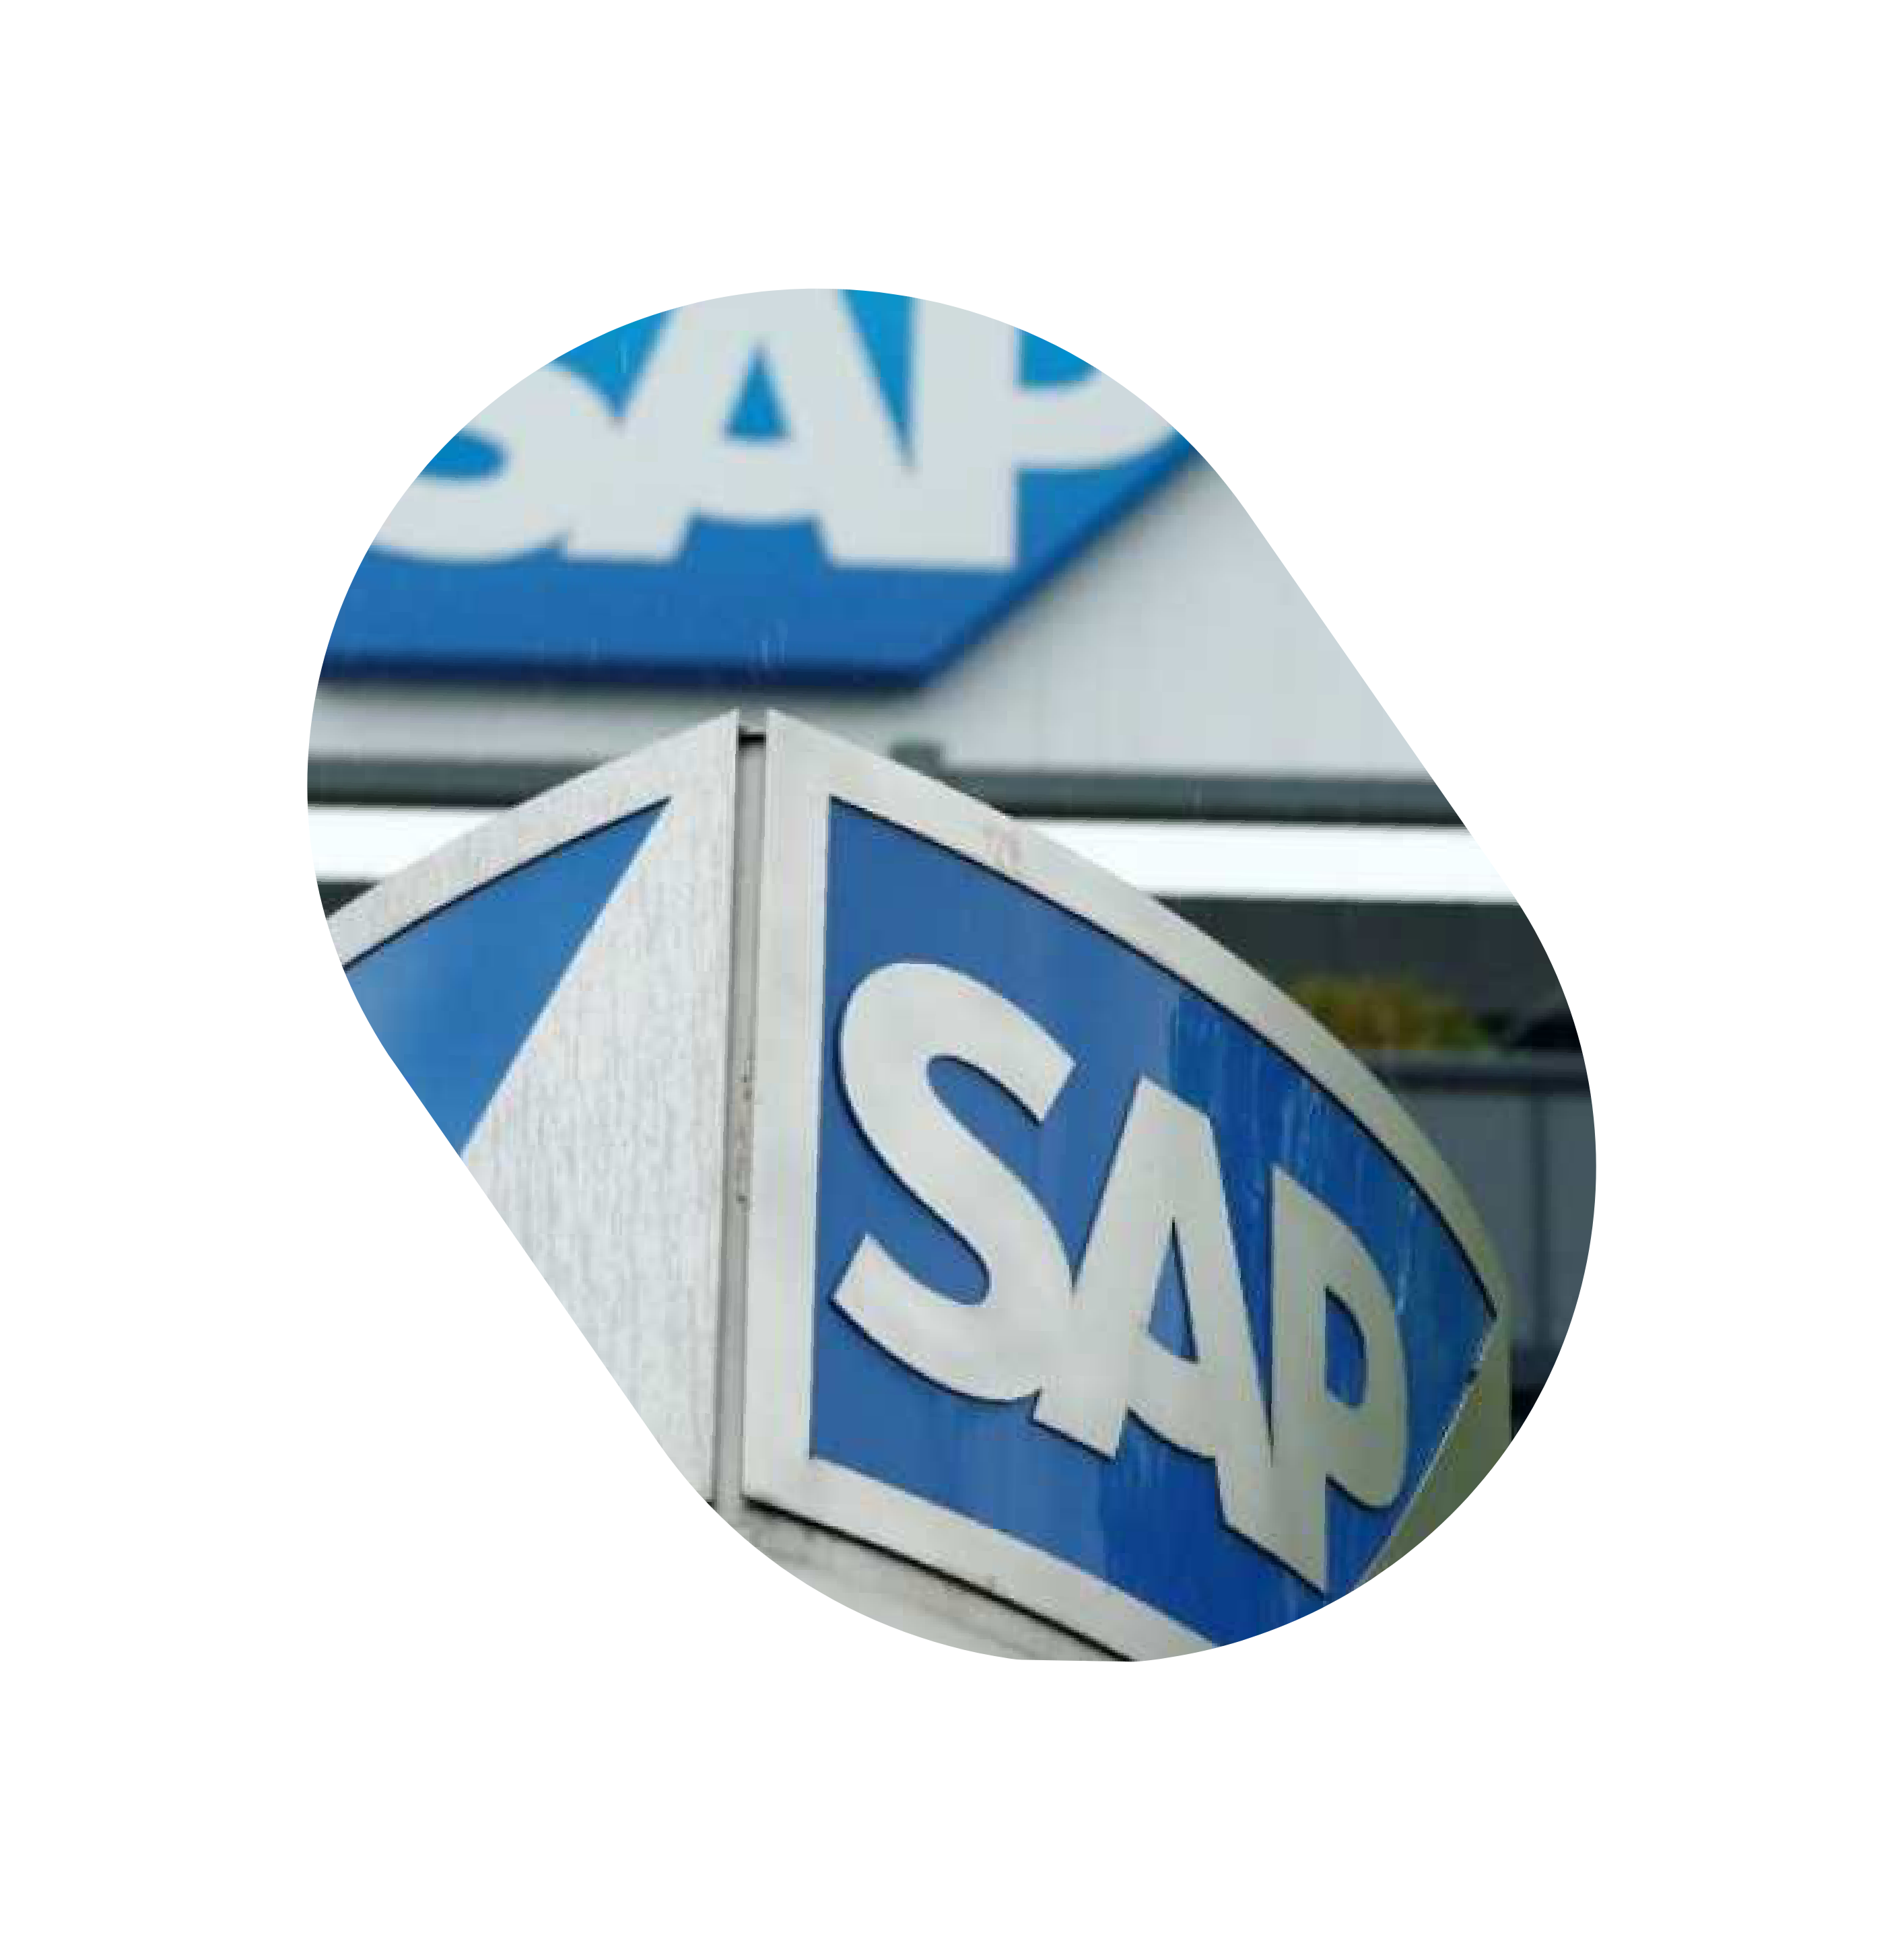  SAP partnership kick-off